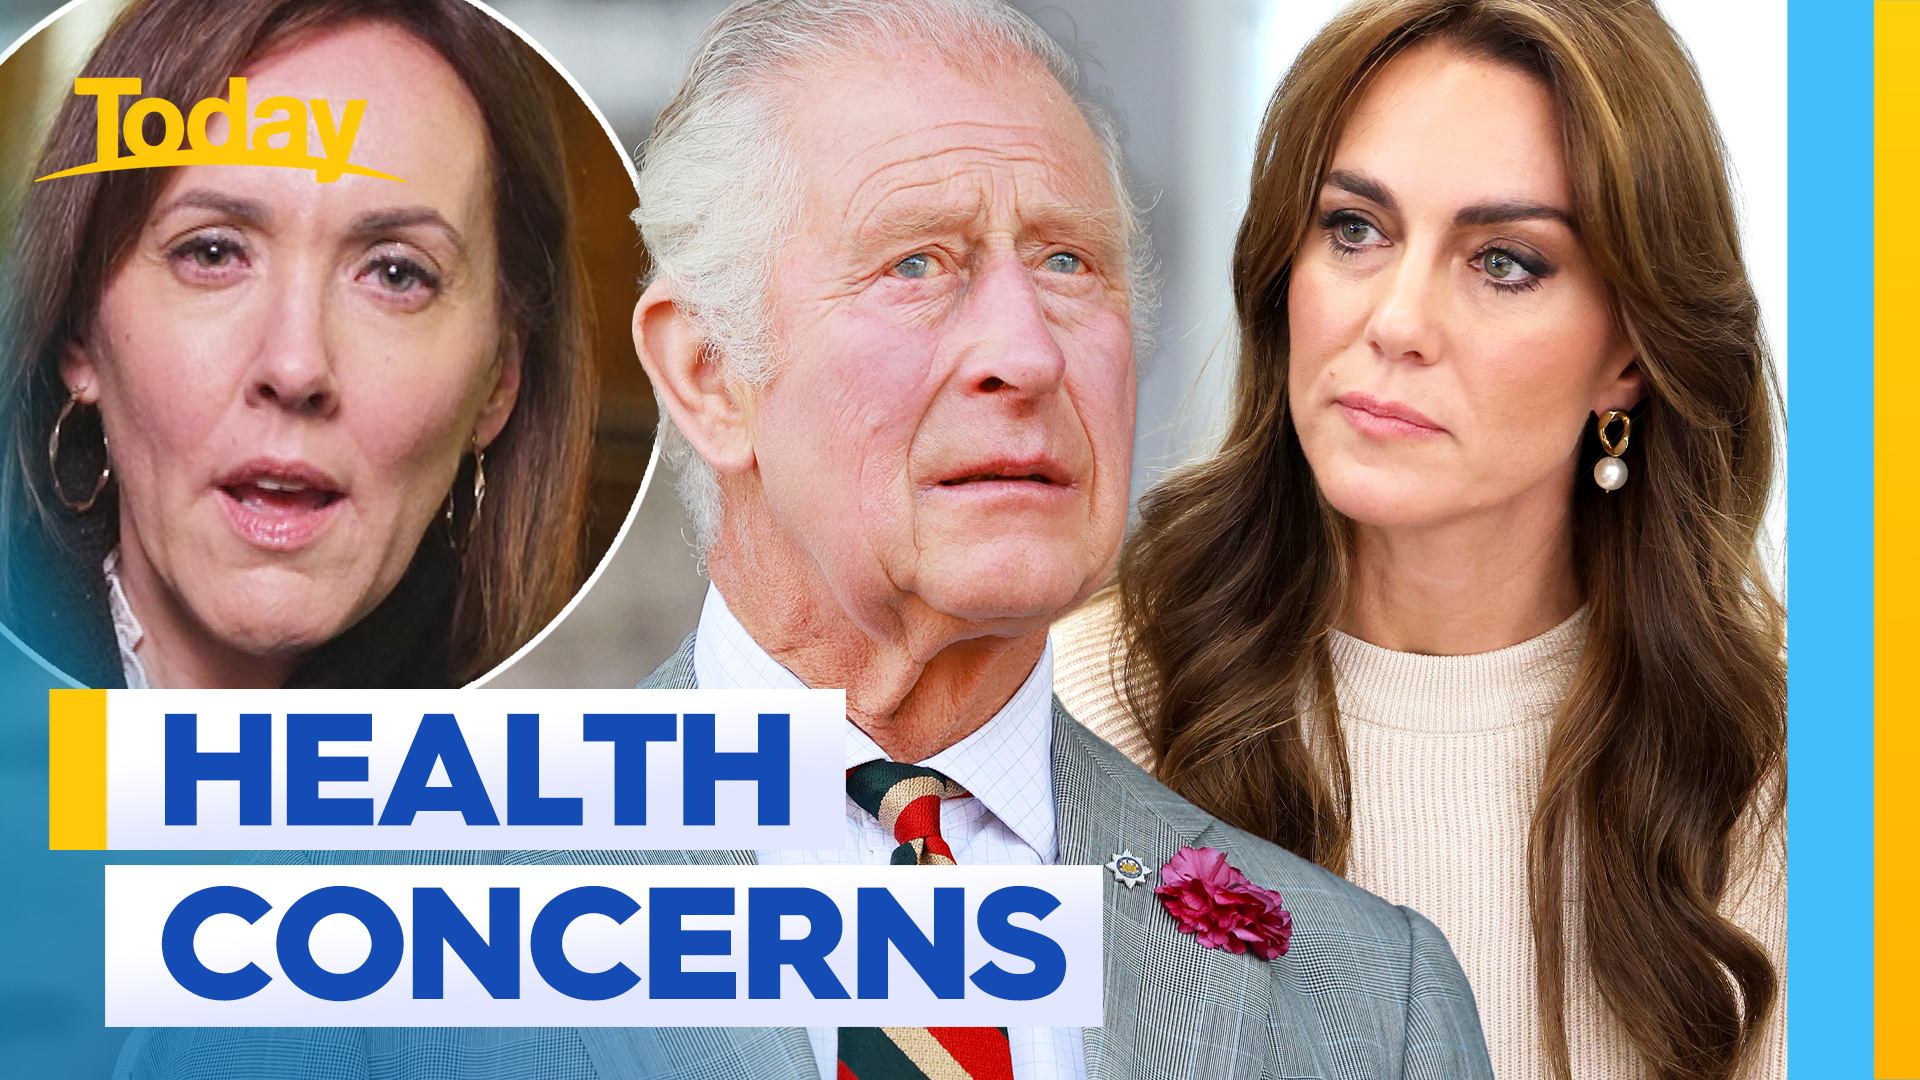 King Charles and Princess Kate surgery shock